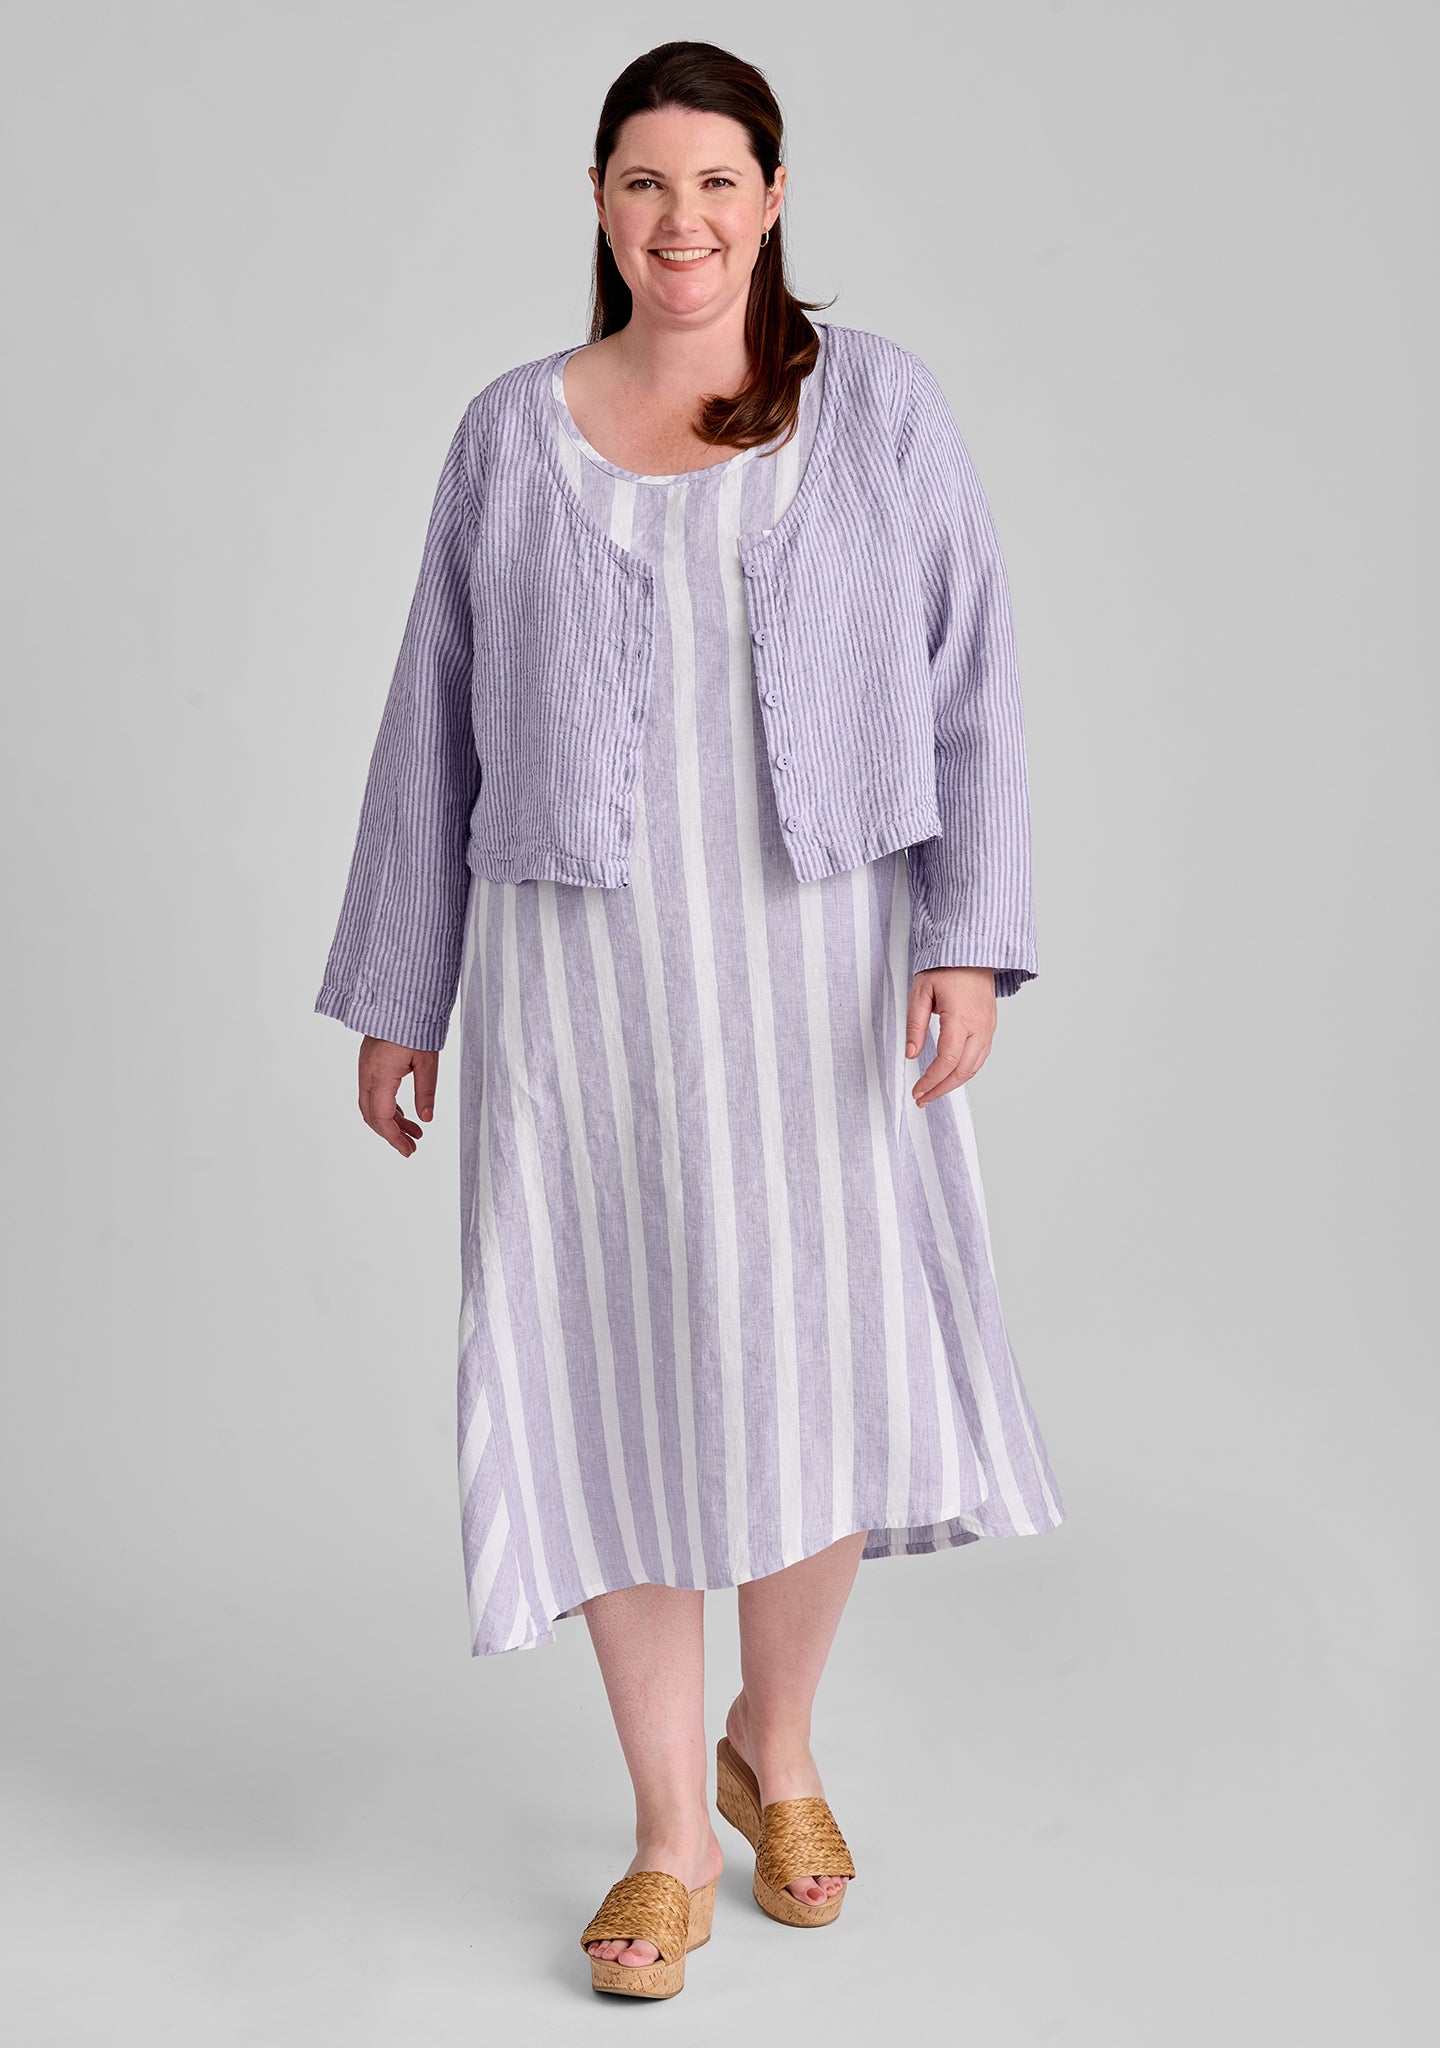 FLAX linen blouse in purple with linen dress in purple